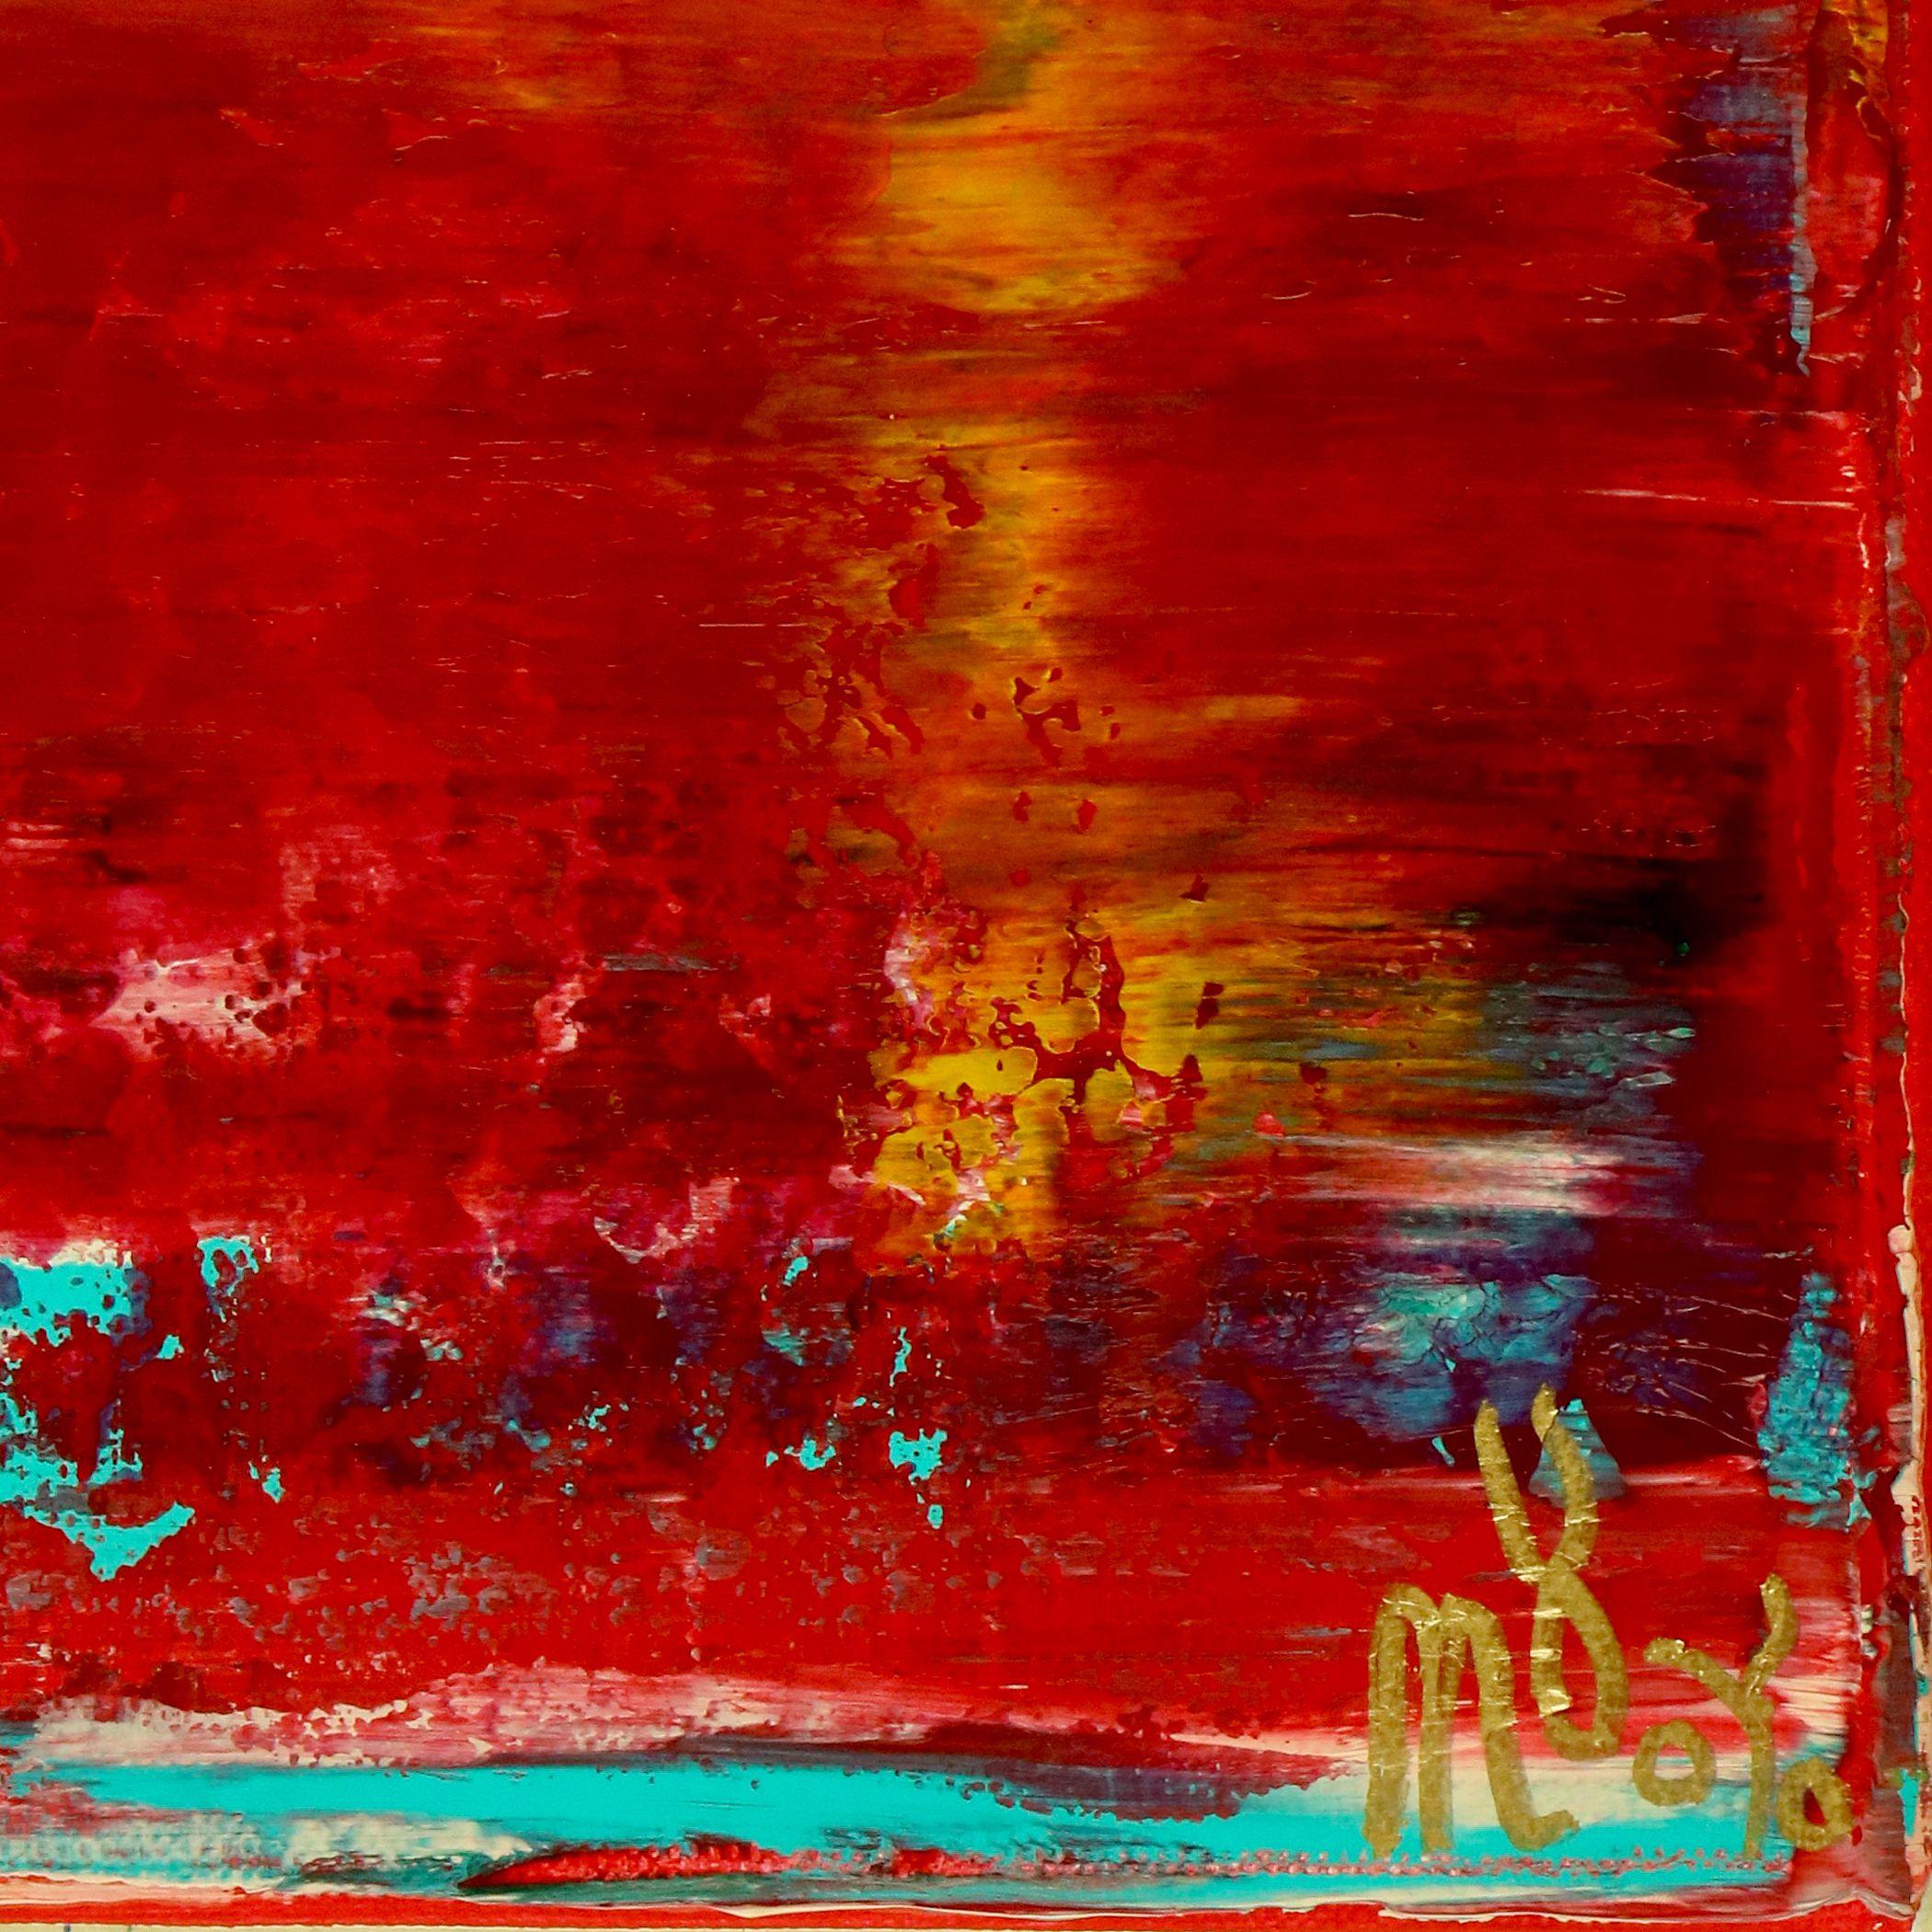 Rojo infinito (Fiery spectra) 2, Mixed Media on Canvas - Abstract Mixed Media Art by Nestor Toro